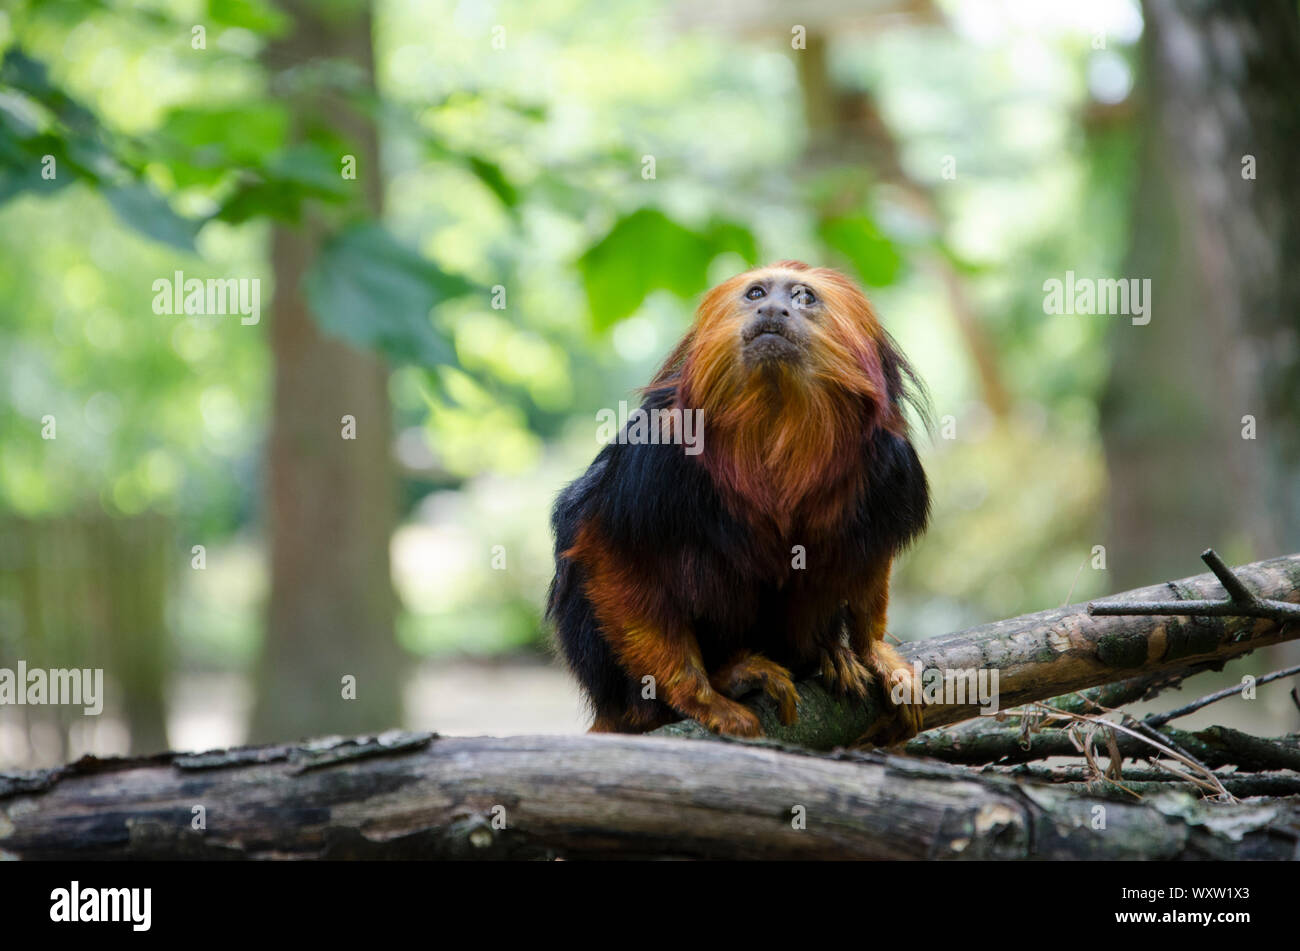 Golden Lion Tamarin tête close up dans son habitat. Singe avec les cheveux rouges et noirs de la fourrure. Banque D'Images